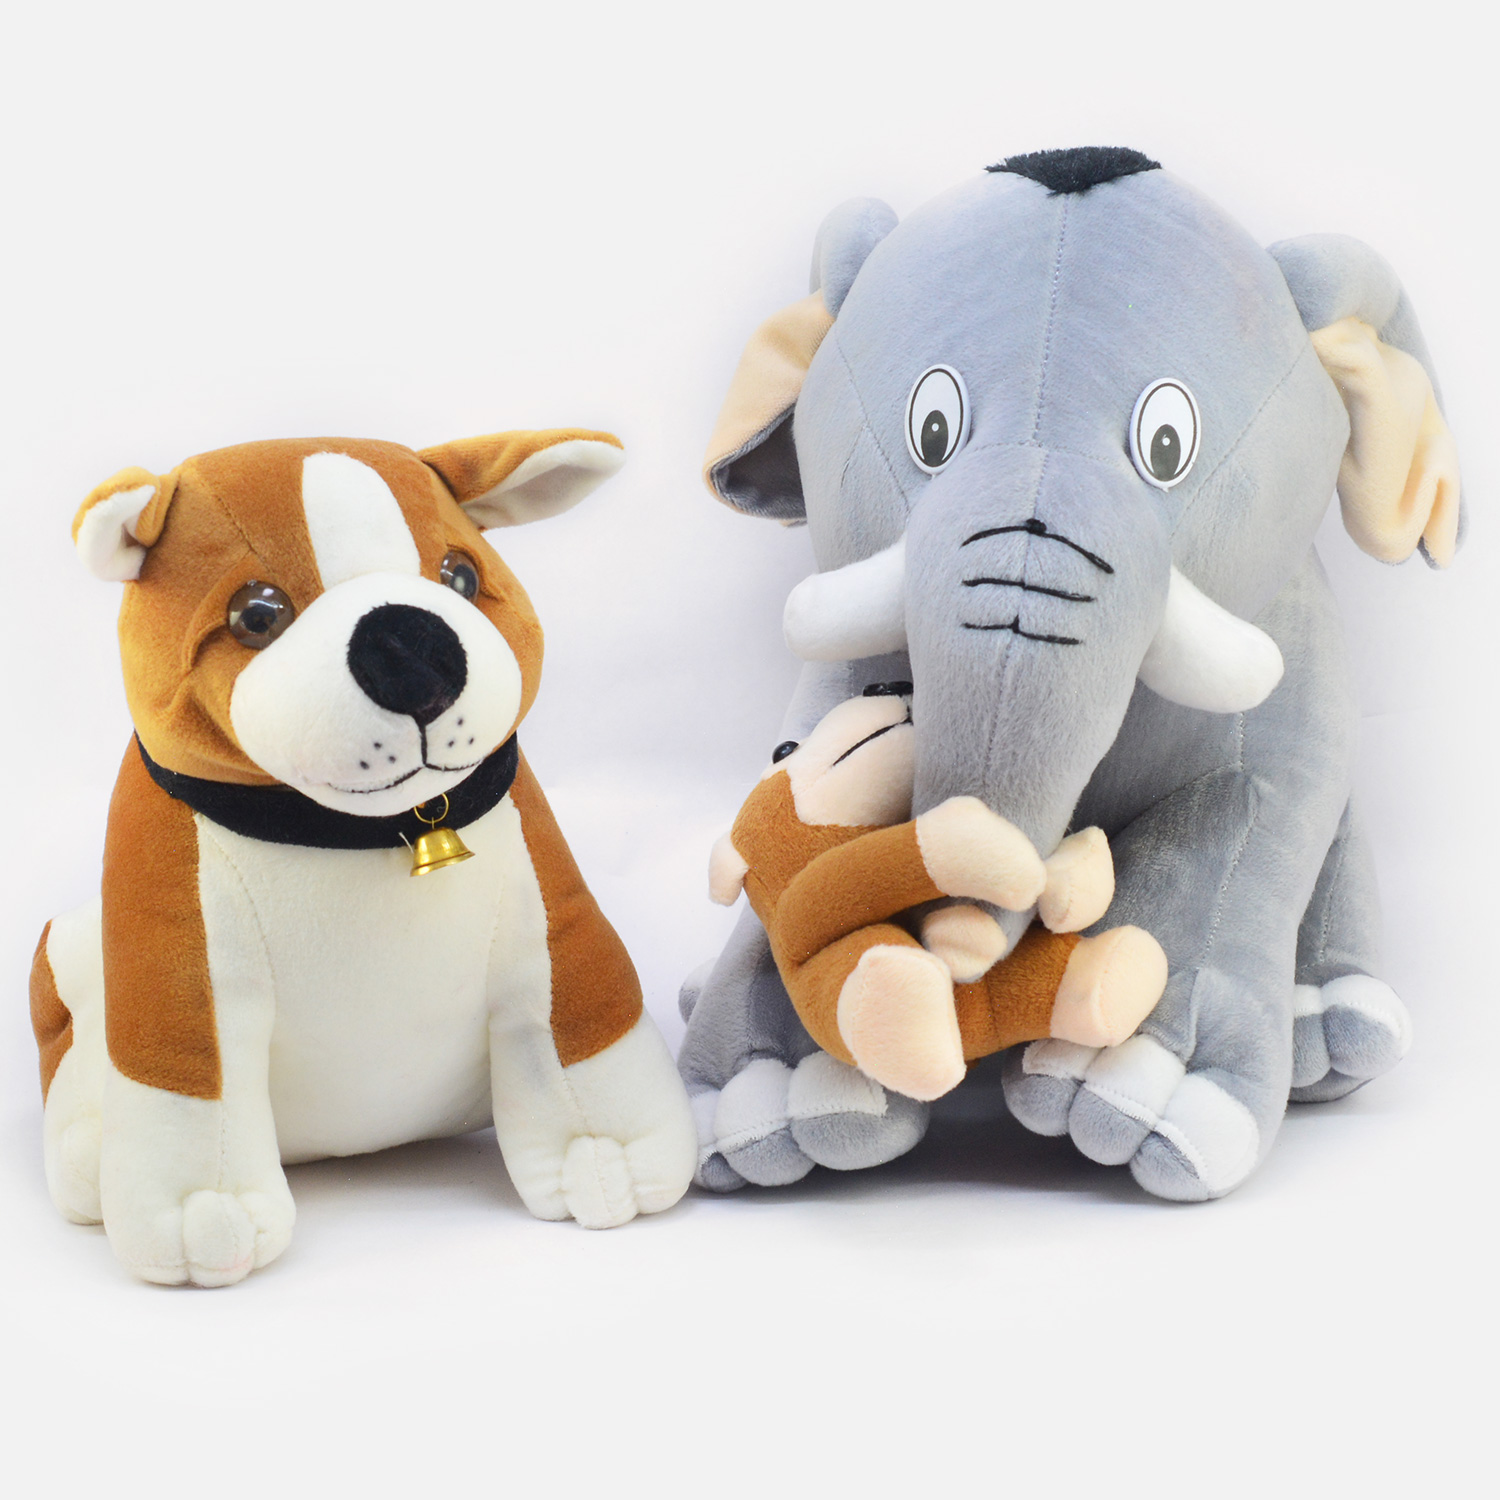 Amazing Elephant and Monkey with Ultra Dog Soft Toy